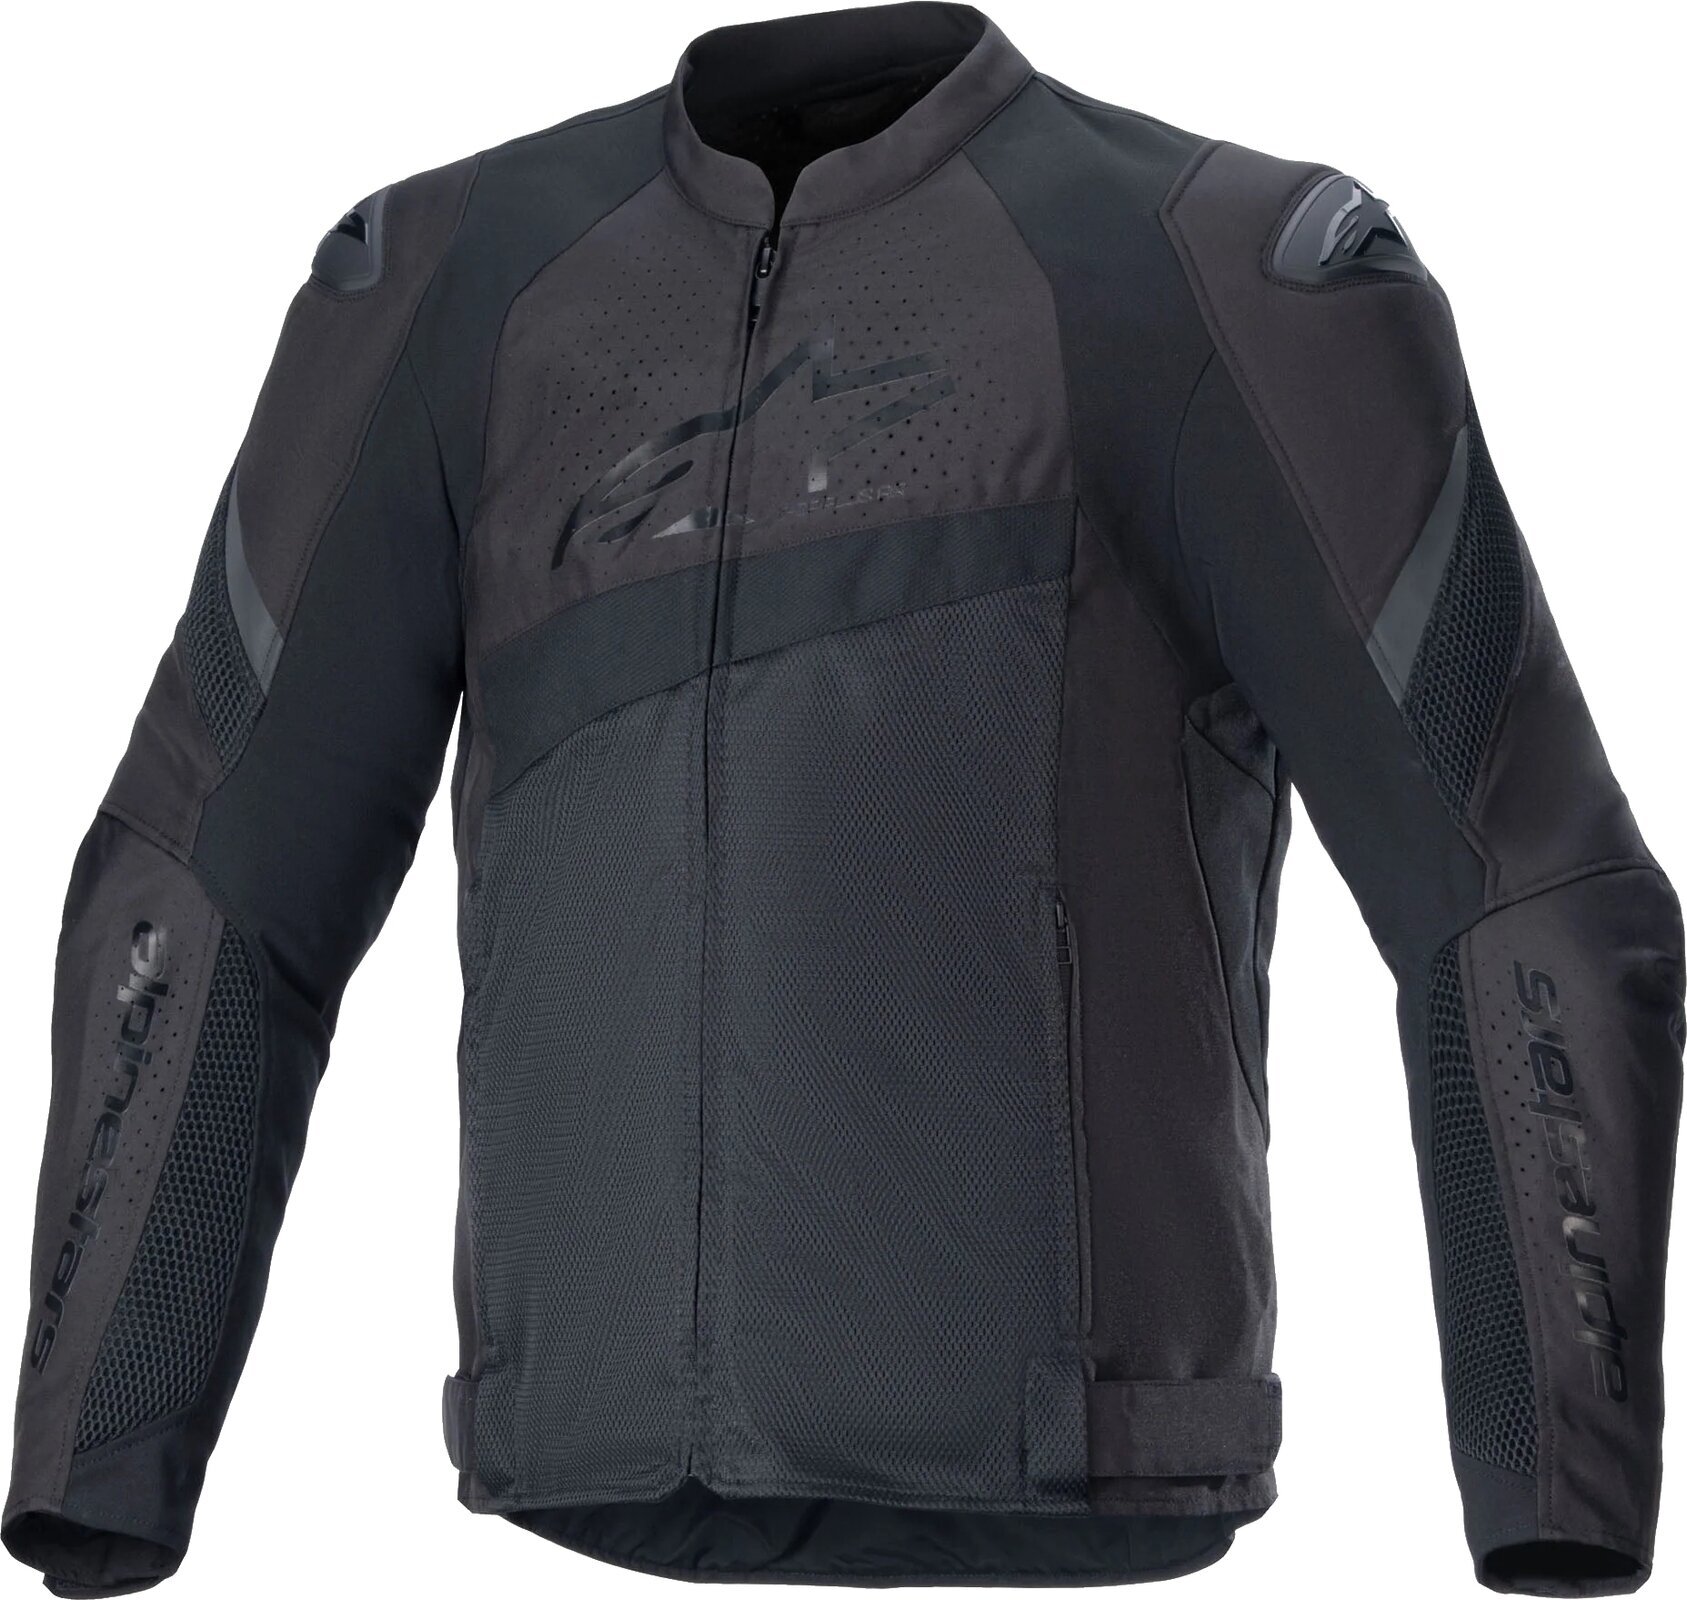 Δερμάτινα Μπουφάν Μηχανής Alpinestars GP Plus R V4 Airflow Leather Jacket Black/Black 60 Δερμάτινα Μπουφάν Μηχανής